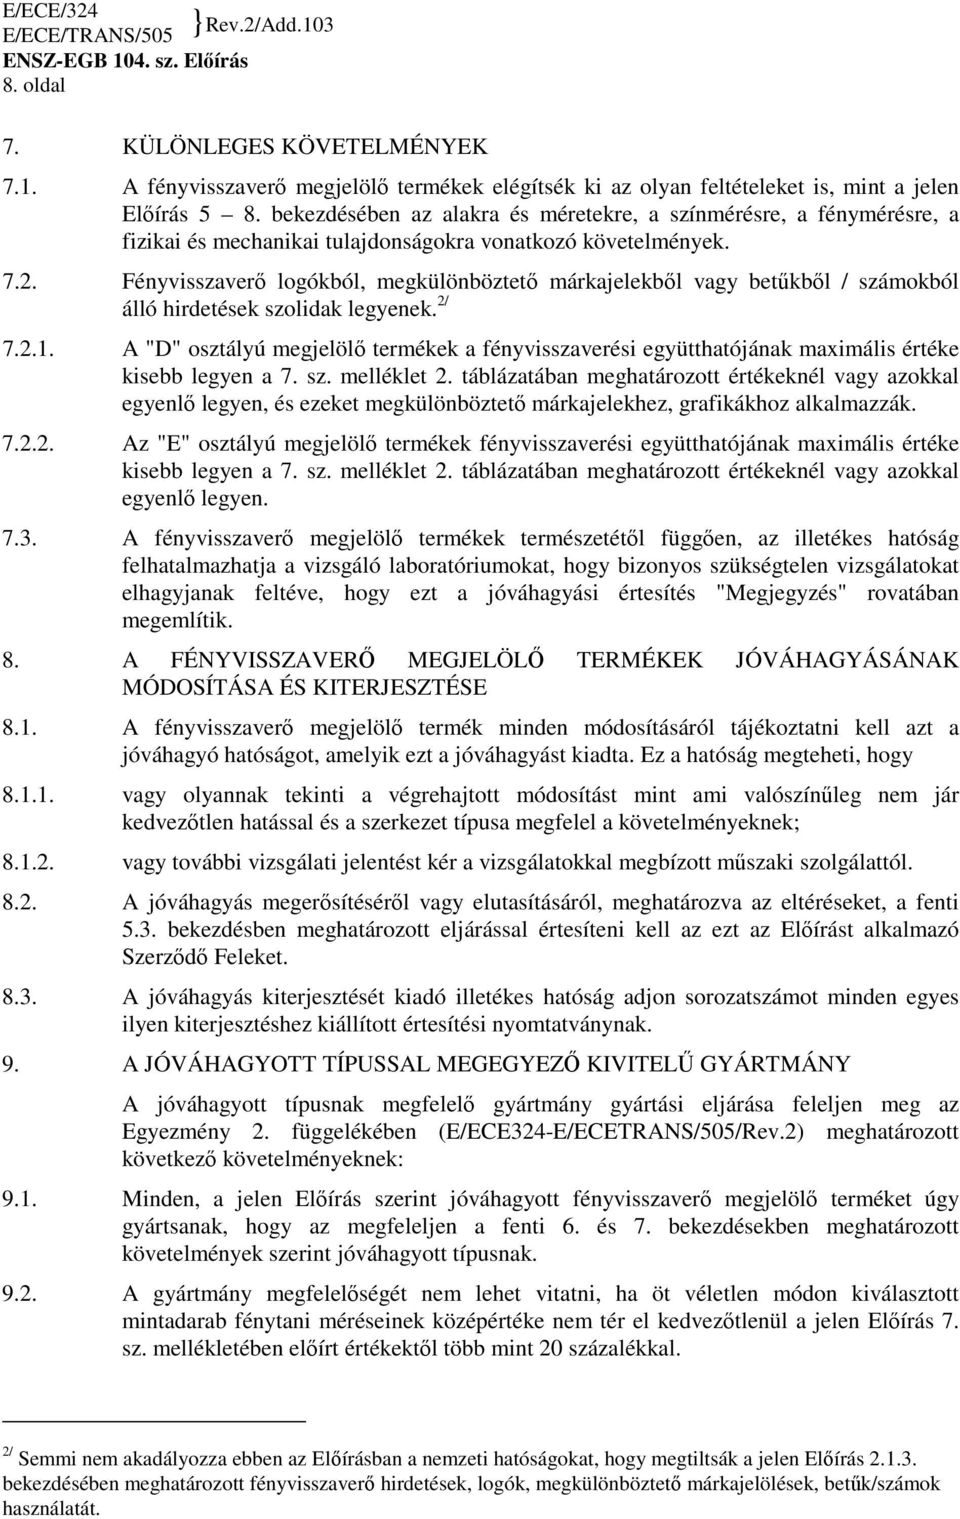 Fényvisszaverı logókból, megkülönböztetı márkajelekbıl vagy betőkbıl / számokból álló hirdetések szolidak legyenek. 2/ 7.2.1.